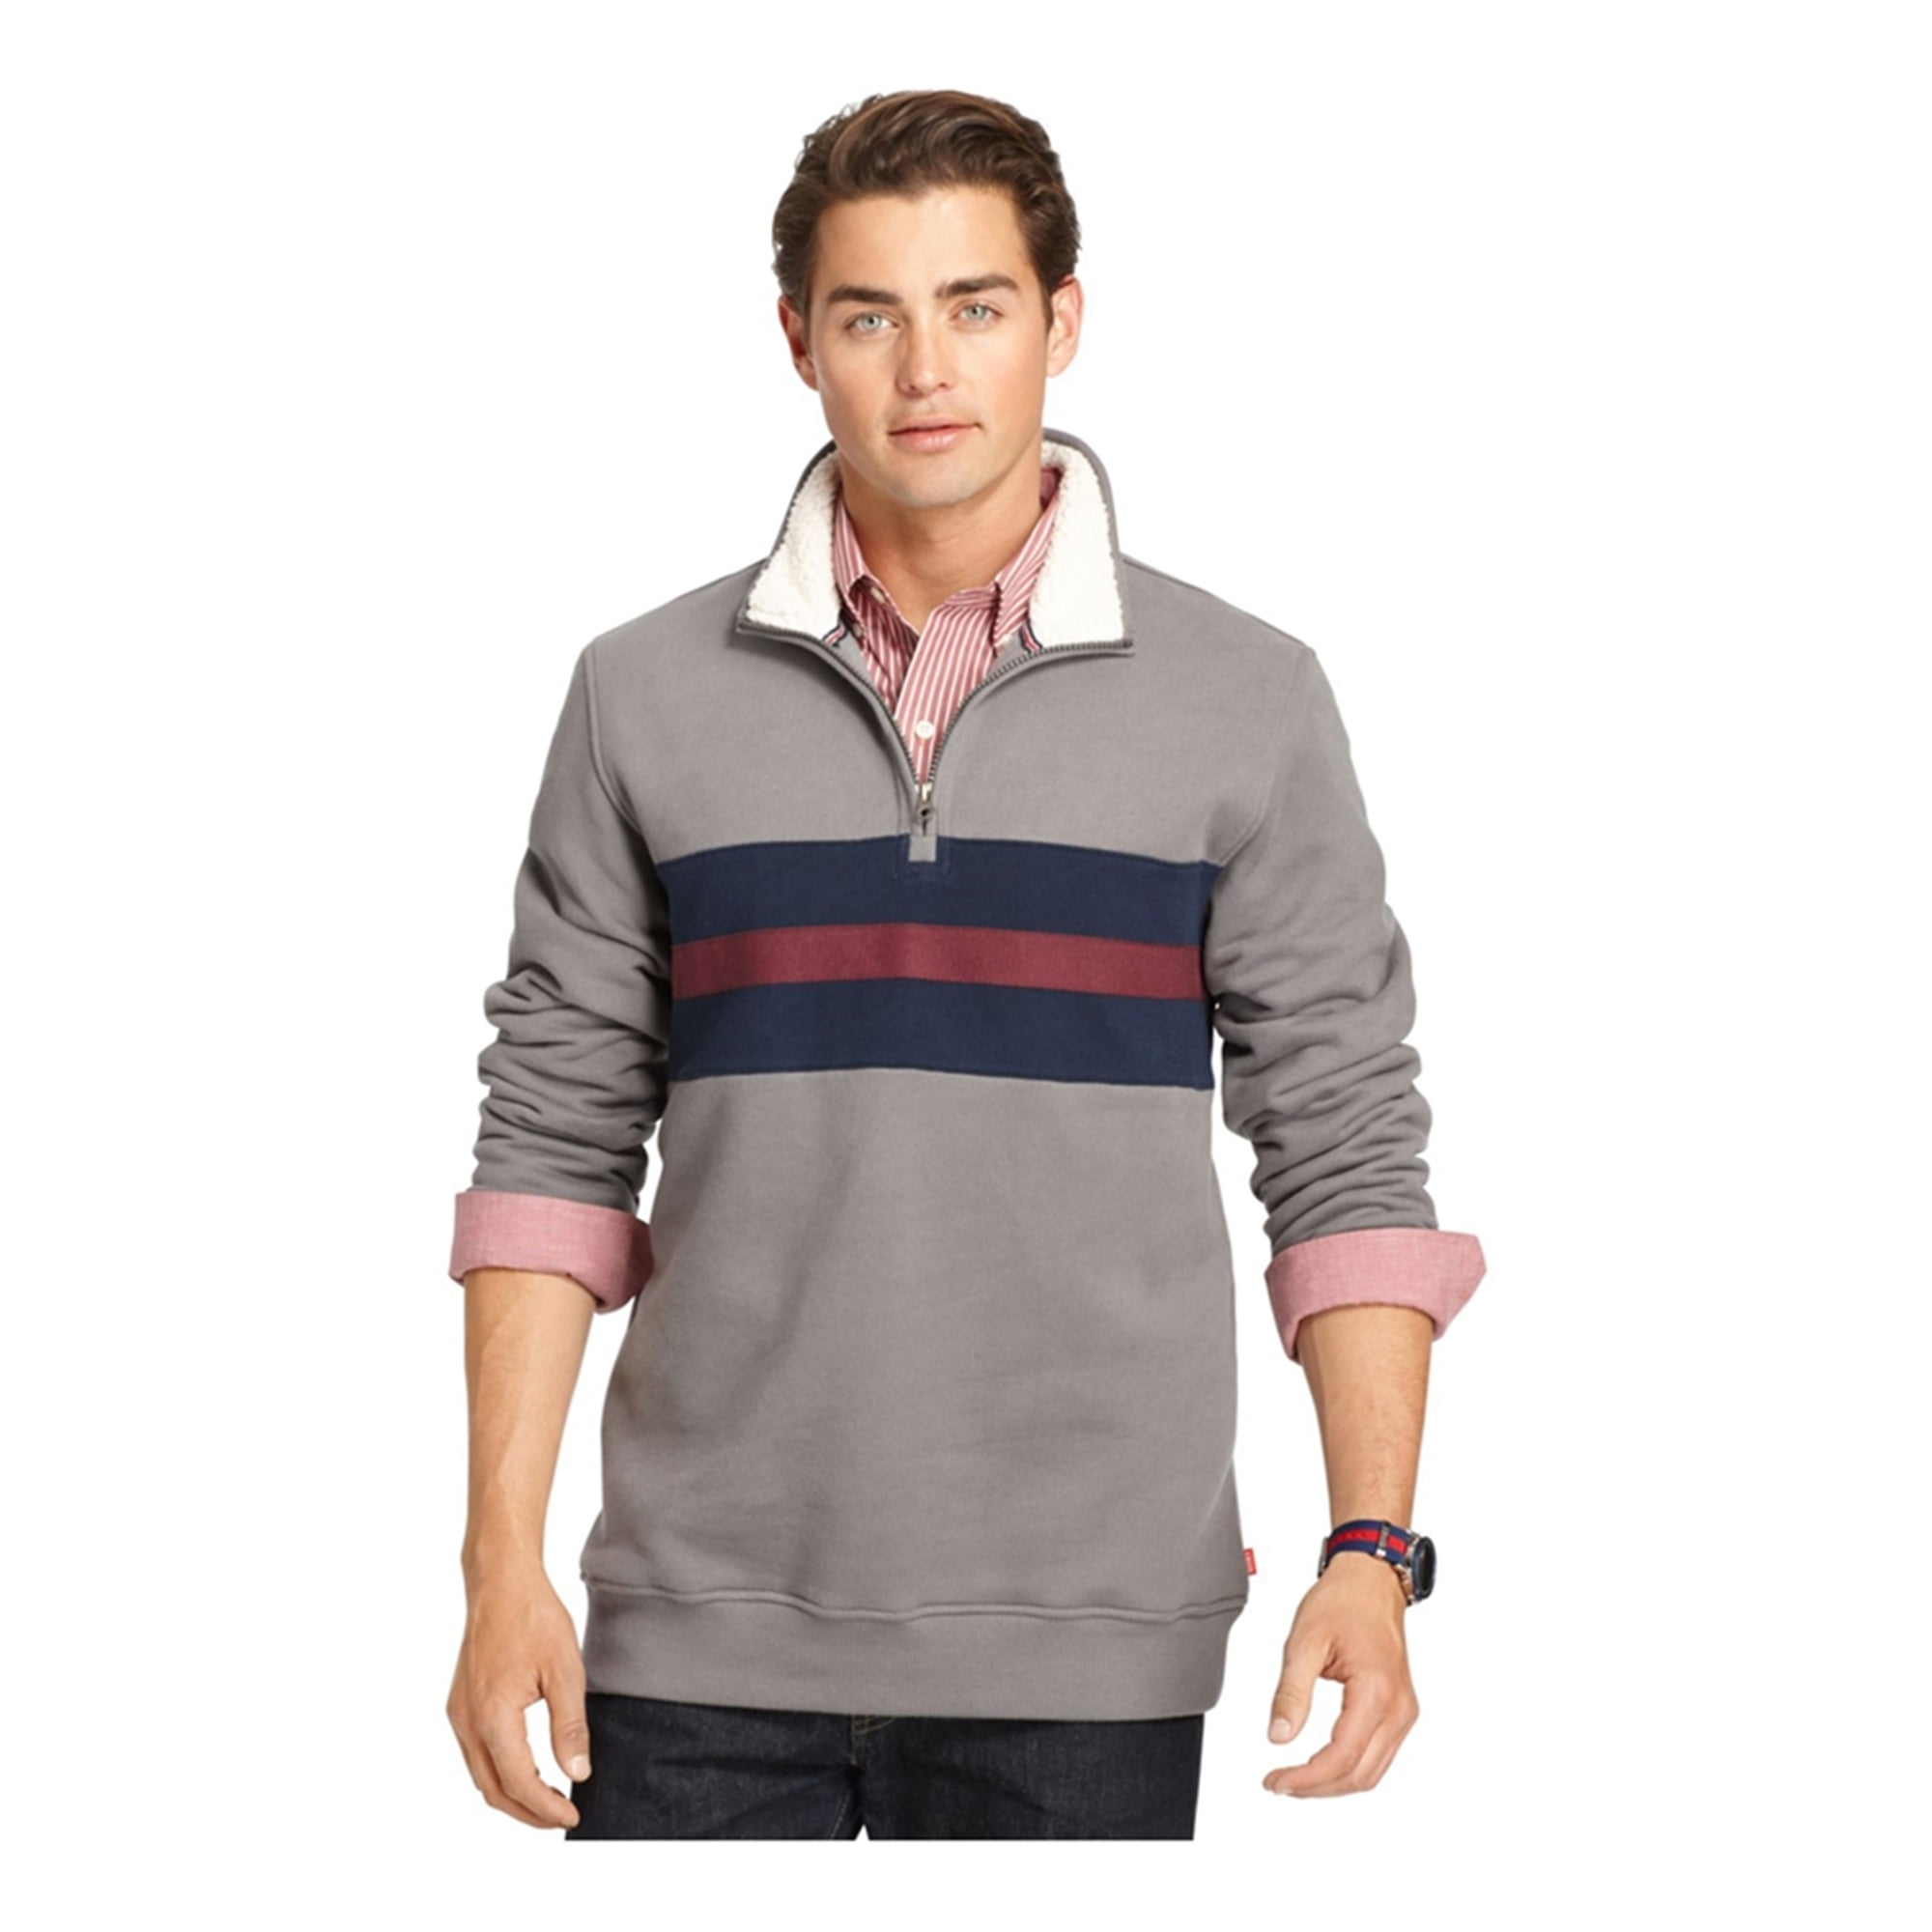 IZOD - IZOD Mens Quarter-Zip Striped Sweatshirt, Grey, Small - Walmart ...